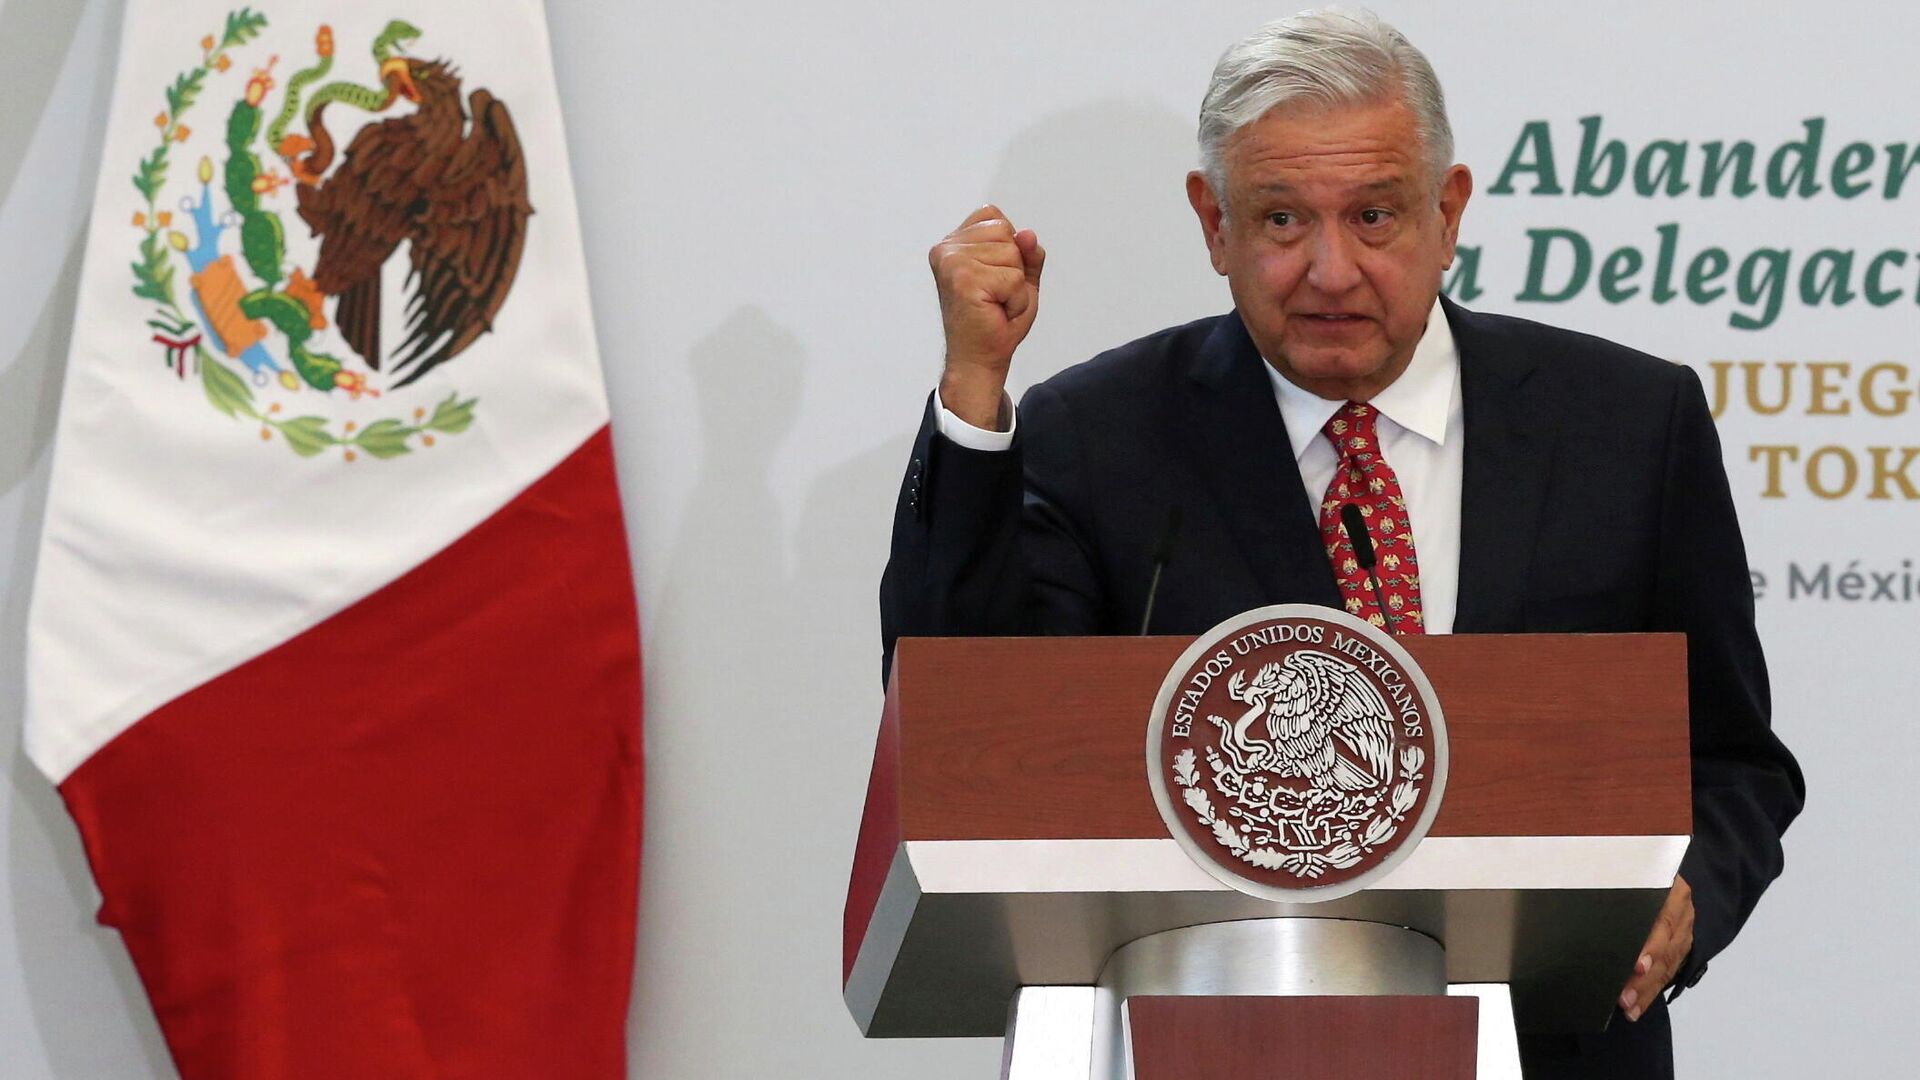 El presidente de México, Andrés Manuel López Obrador, pronuncia un discurso durante una ceremonia previa a los Juegos Olímpicos de Tokio 2020, en la Ciudad de México, México, el 5 de julio de 2021 - Sputnik Mundo, 1920, 23.08.2021